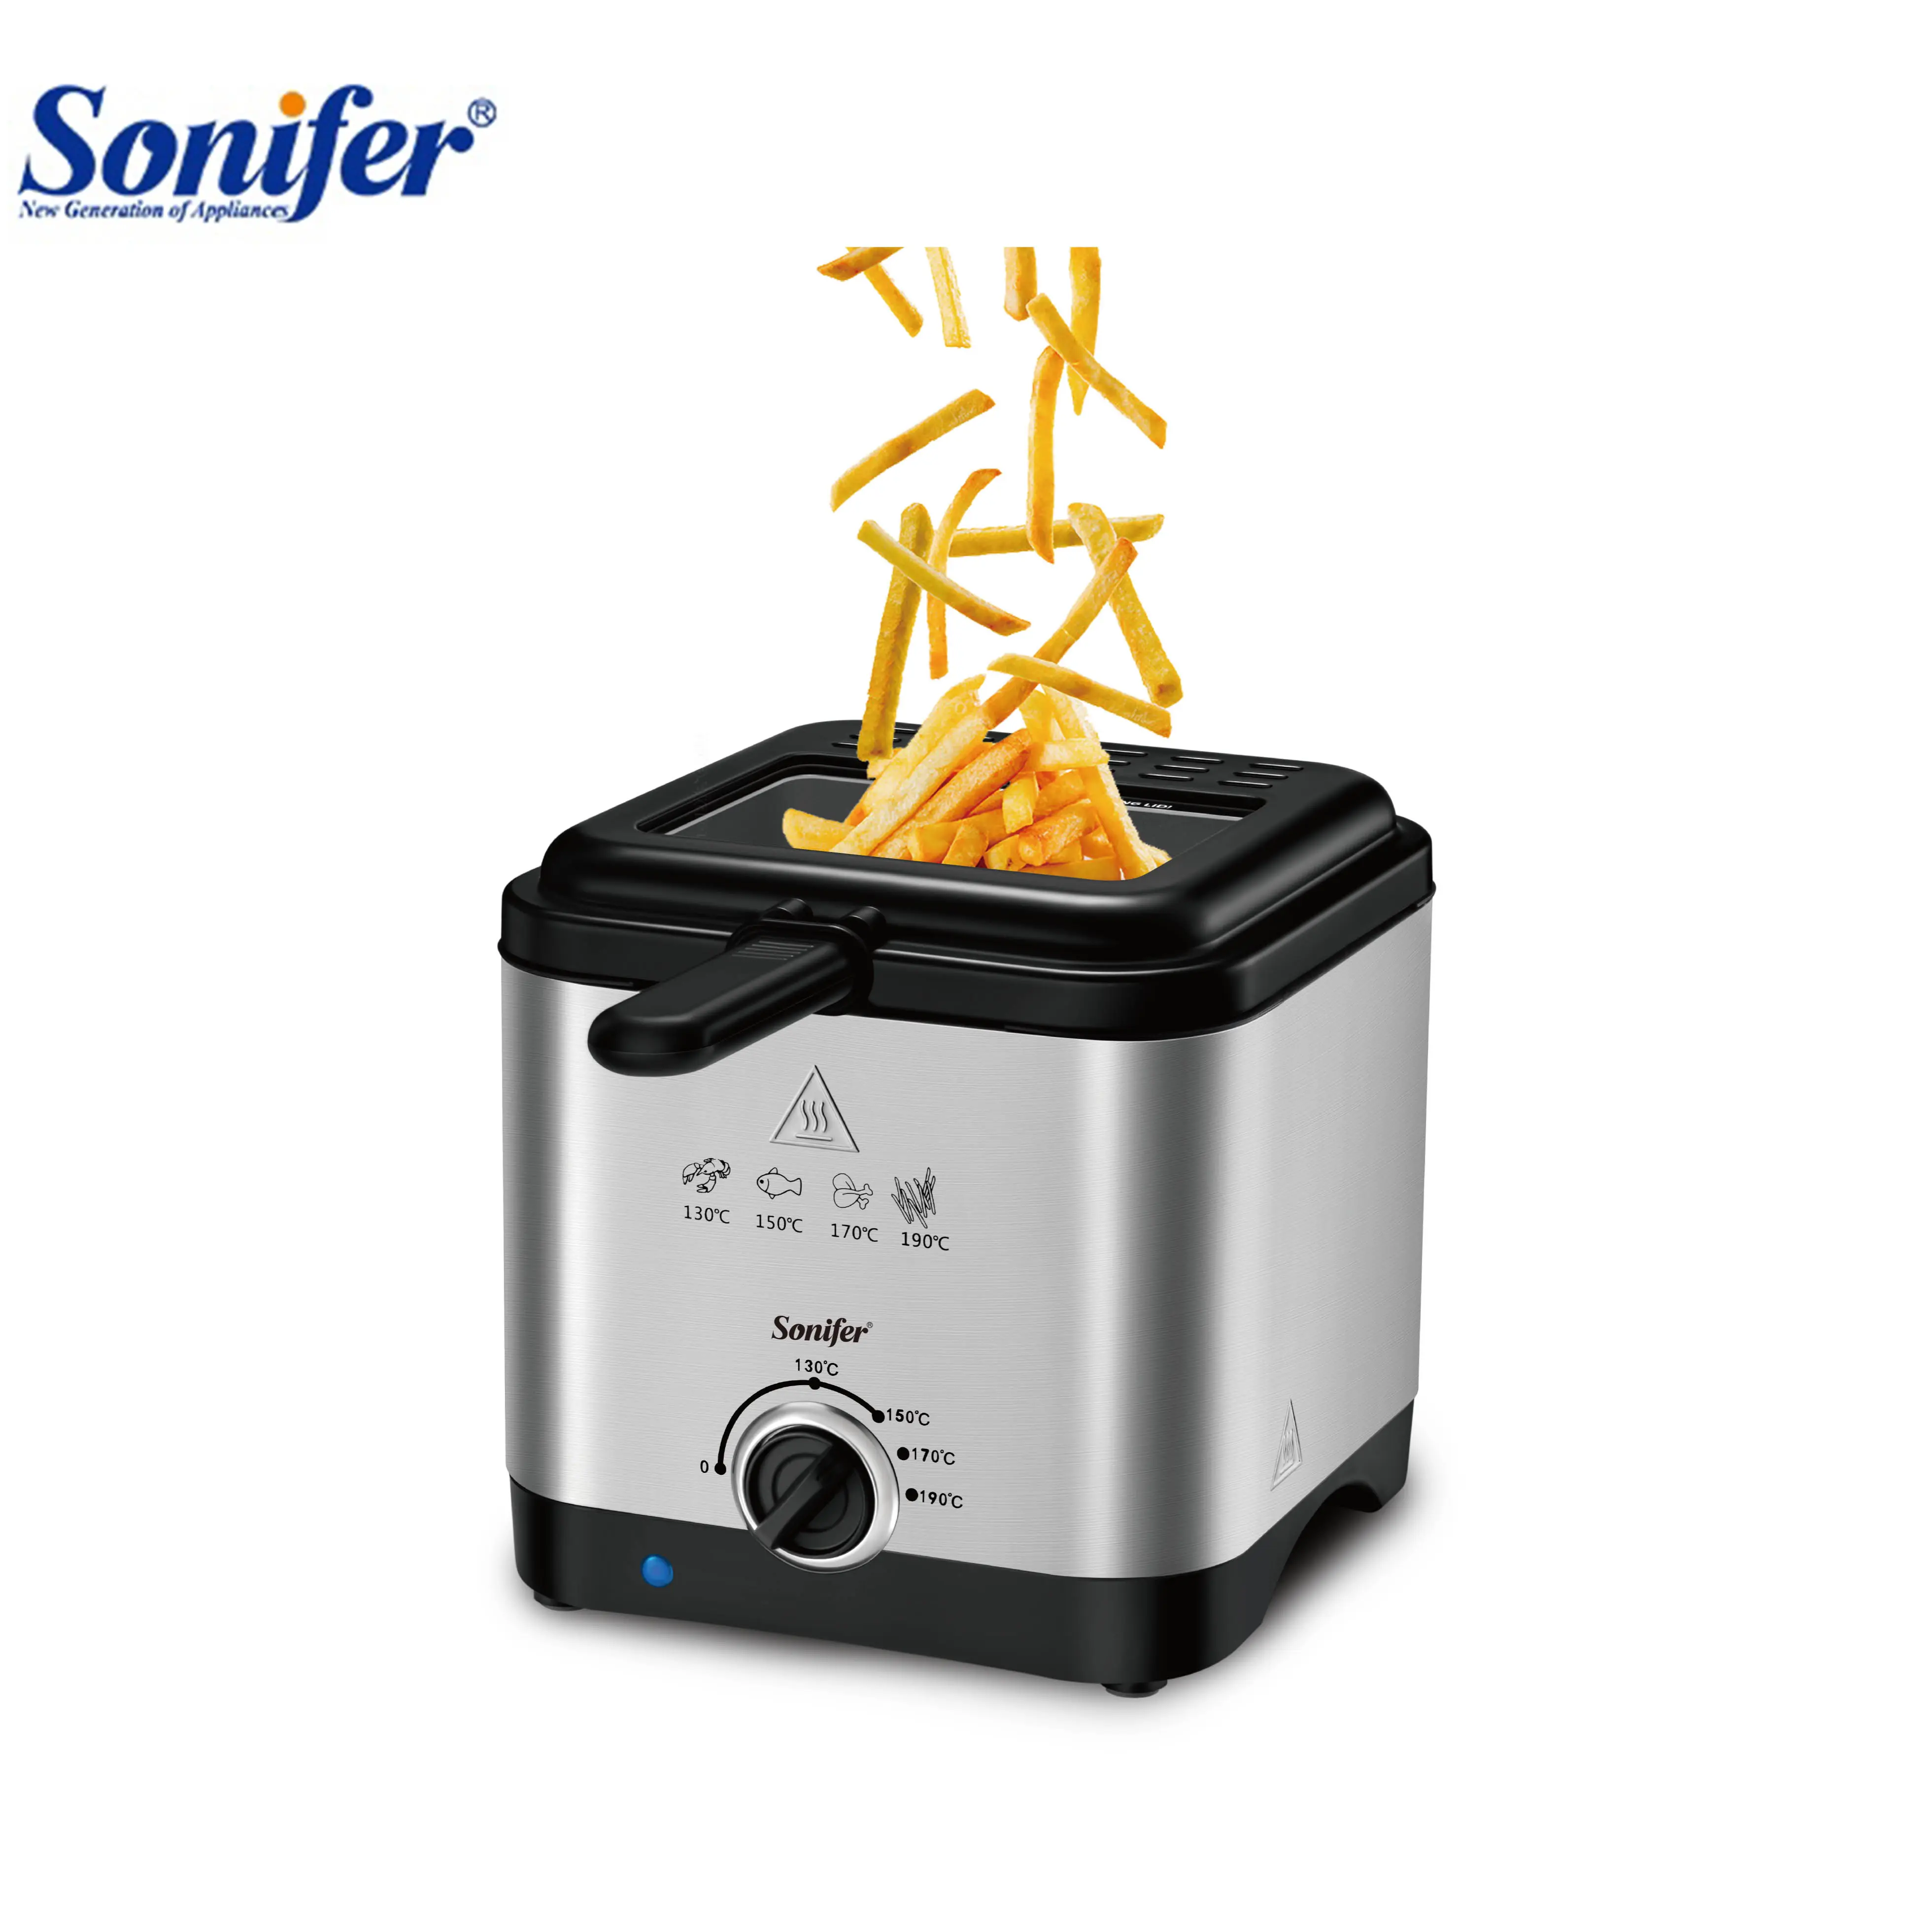 Sonifer SF-1019 nuova cucina 1000W elemento riscaldante in acciaio inossidabile mini 1.5L olio friggitrice elettrica per la casa